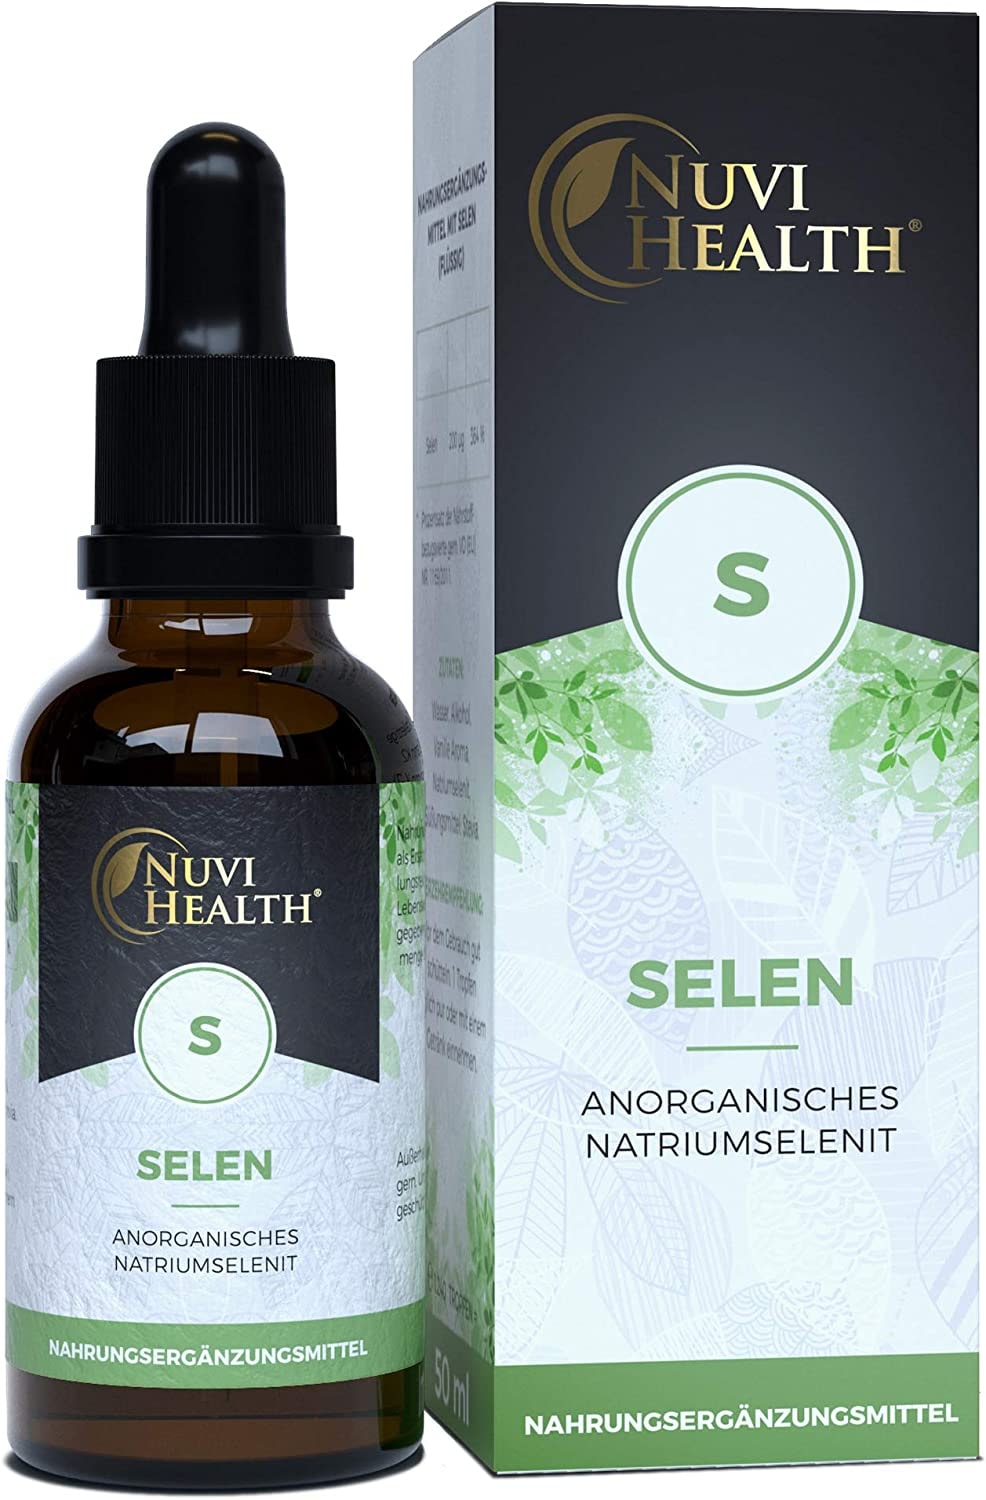 Nuvi Health - Selen Tropfen 200 µg -50 ML - Premium: 100 µg Selenium PRO 1 TROPFEN - Natriumselenit mit höchster Bioaktivität - Selenium flüssig - Vegan - Premium Qualität